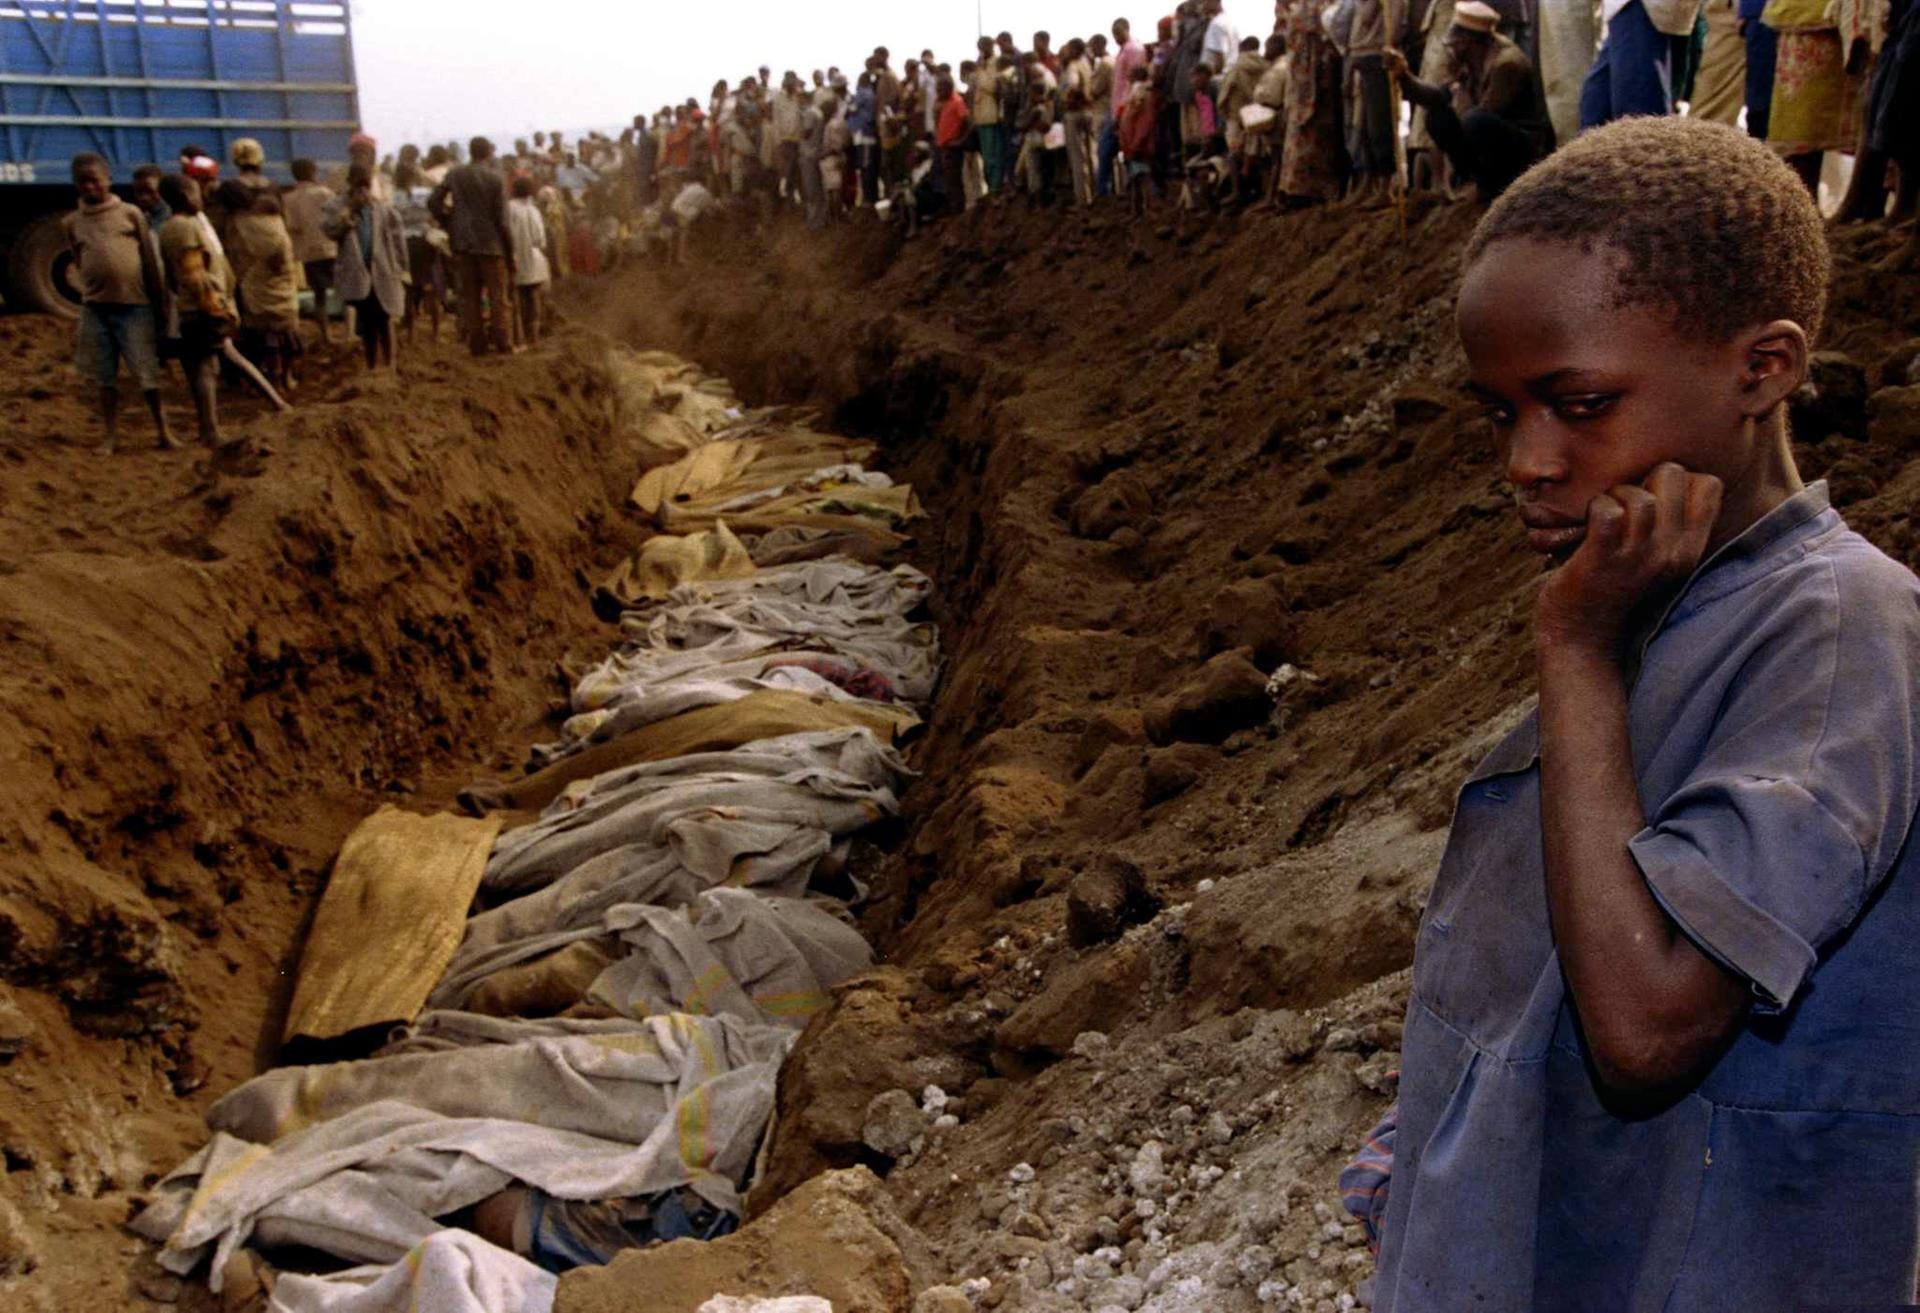 21. April: 210.000 Menschen sind bereits tot. Experten schätzen die Zahl der Täter, die bis zum Ende des Genozids einen oder mehrere Morde begingen, auf 175.000 bis 210.000. Etwa 75 Prozent der in Ruanda lebenden Tutsi werden sterben. Der UN-Sicherheitsrat beschließt, die Blauhelmsoldaten abzuziehen. Nur ein kleiner Teil der internationalen Friedenstruppe bleibt zurück.